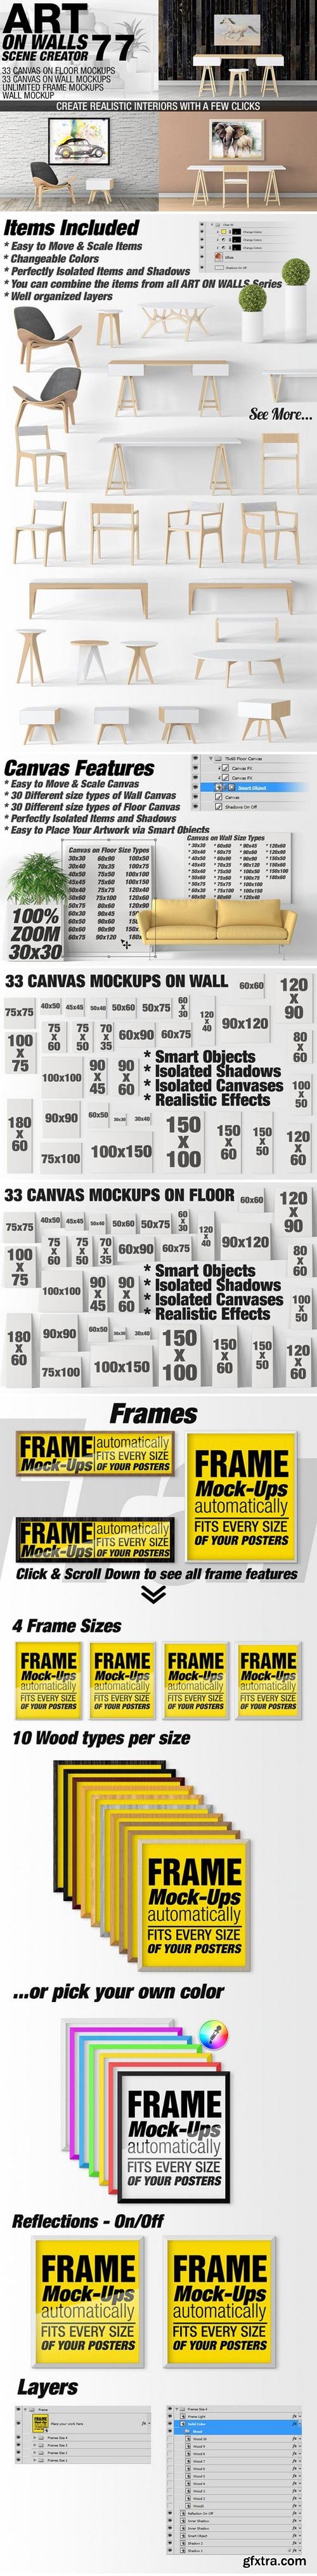 CM - Canvas Mockups - Frames Mockups v 77 1519620